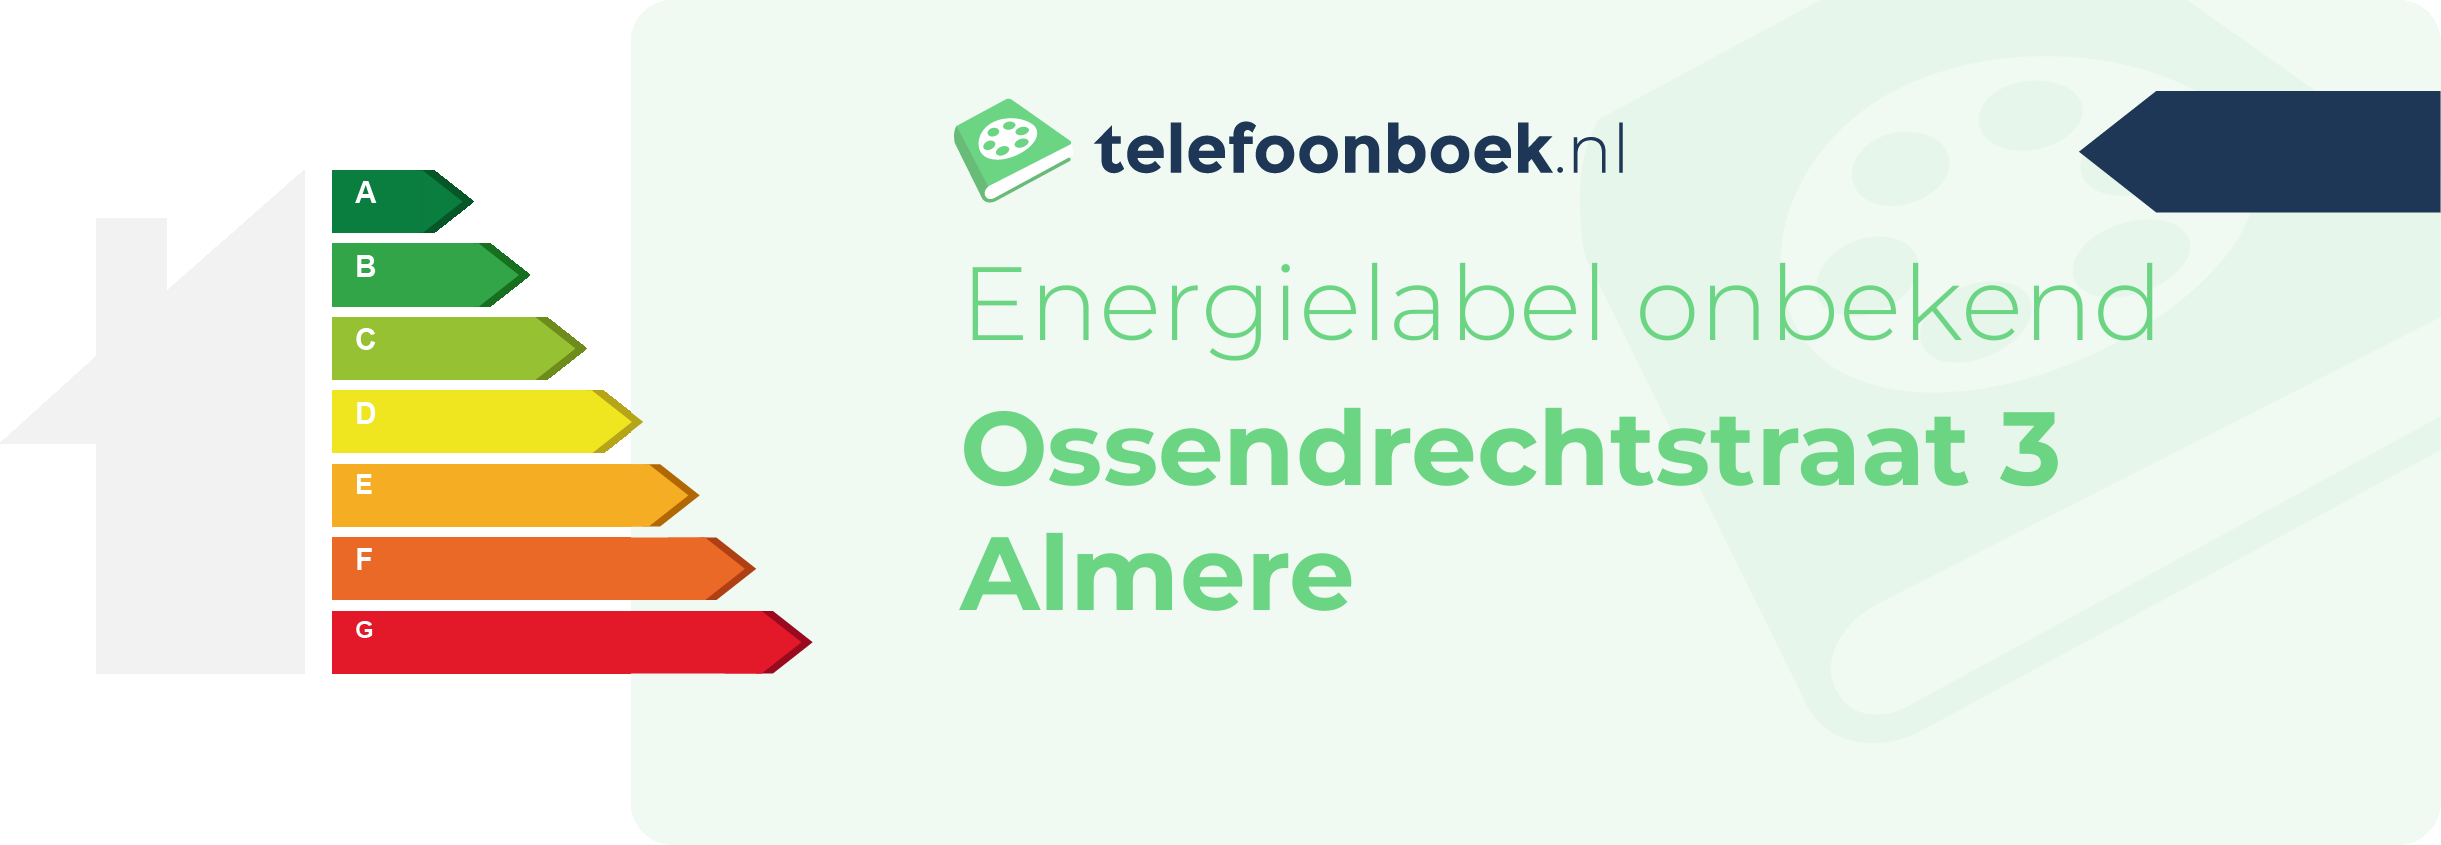 Energielabel Ossendrechtstraat 3 Almere